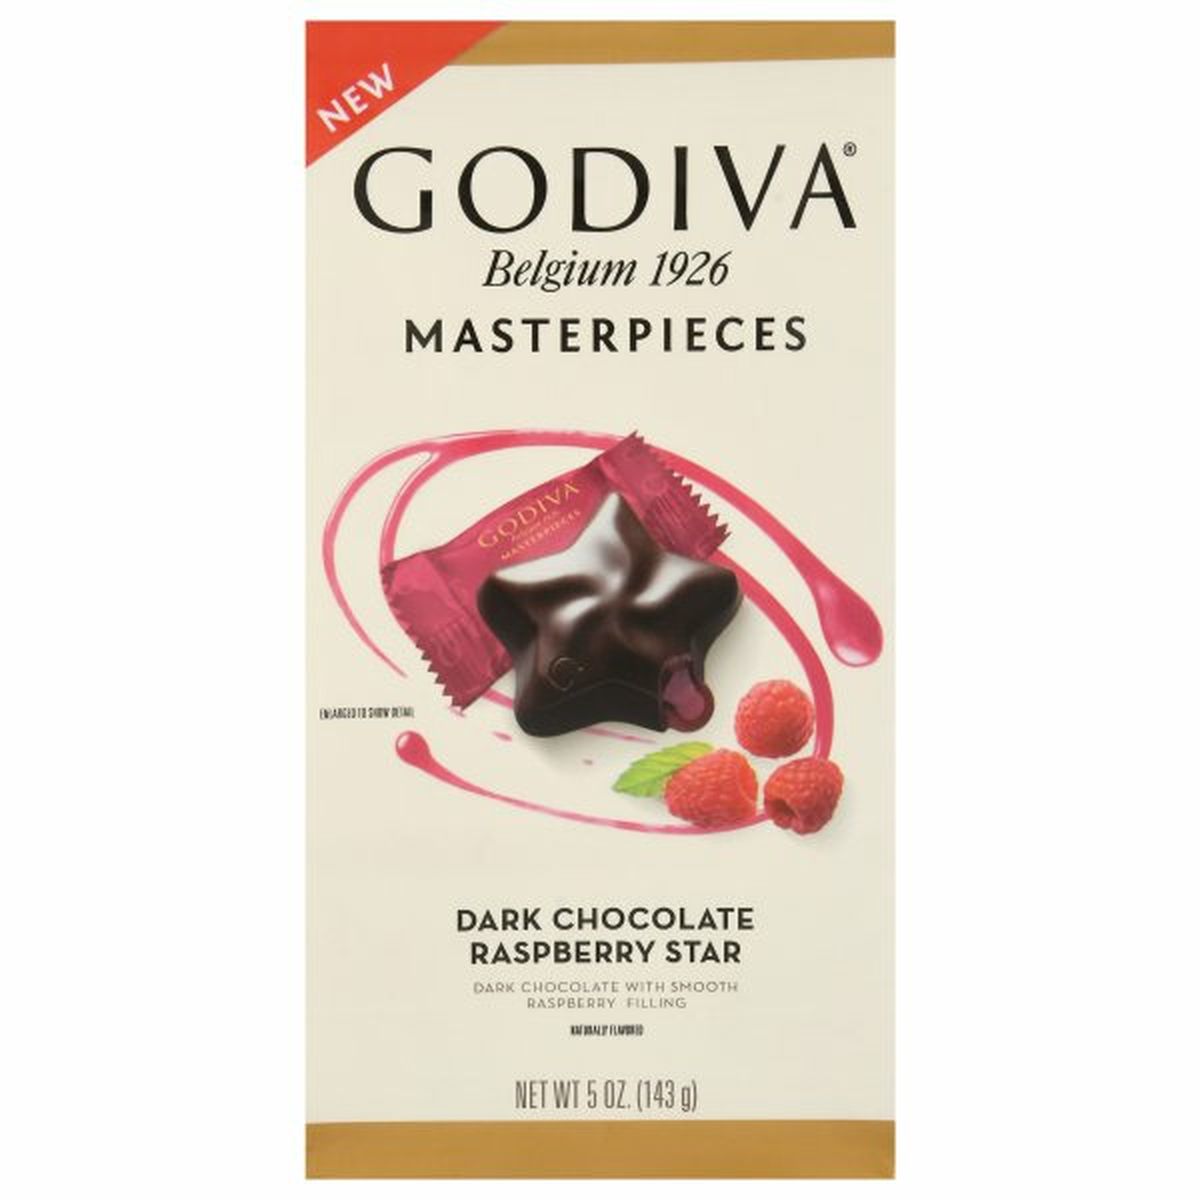 Calories in Godiva Dark Chocolate, Raspberry Star